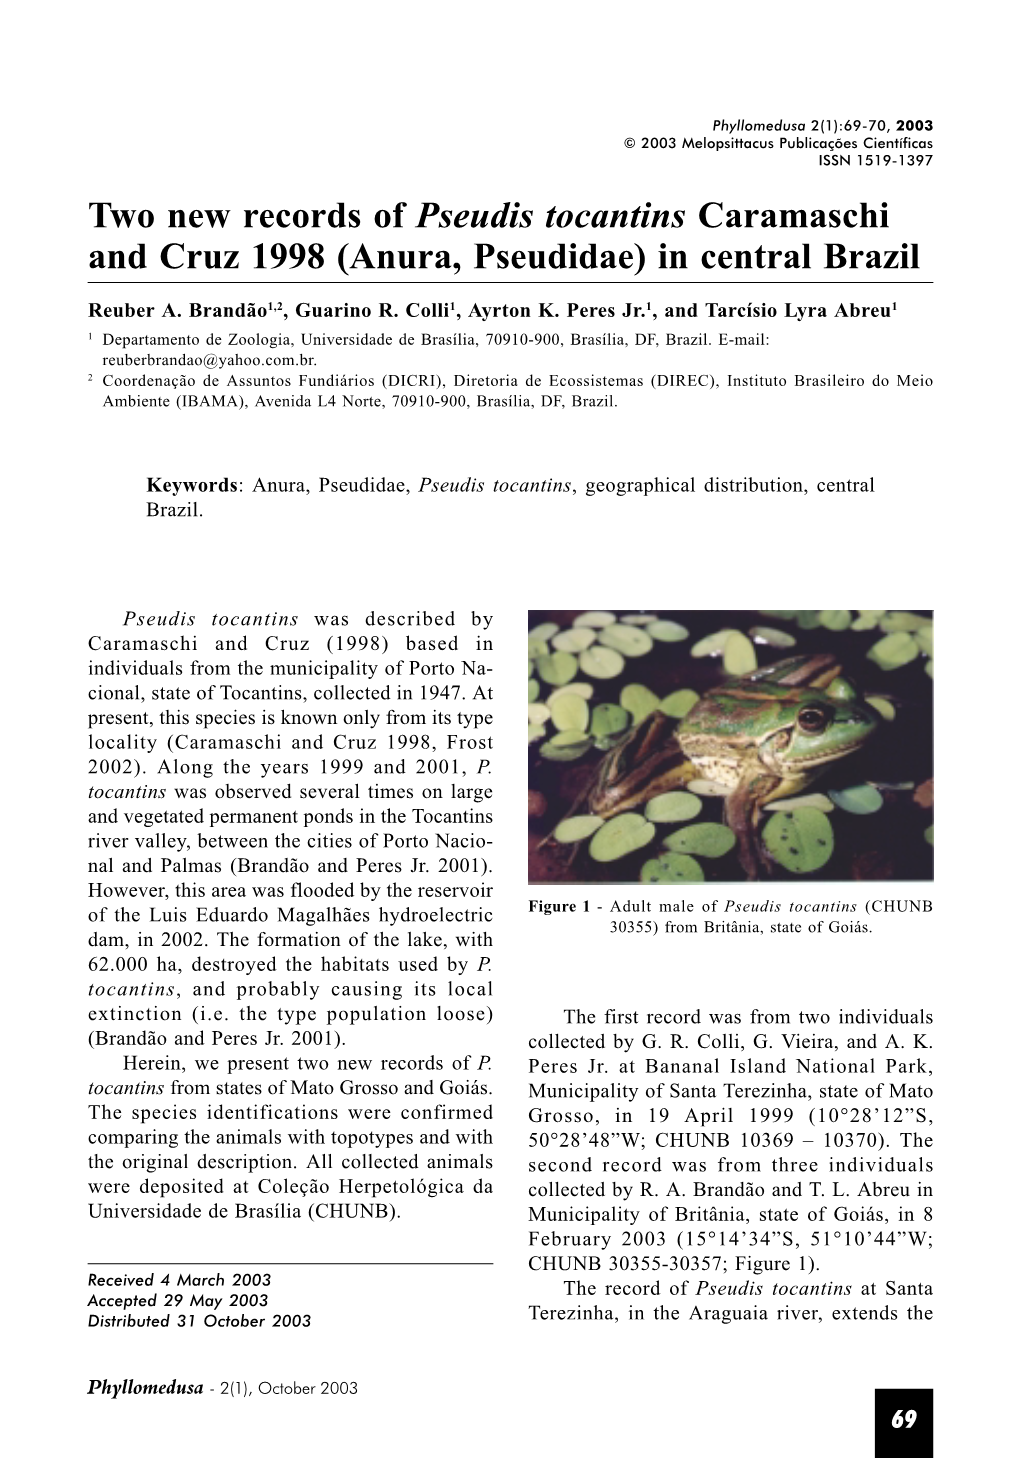 Anura, Pseudidae) in Central Brazil